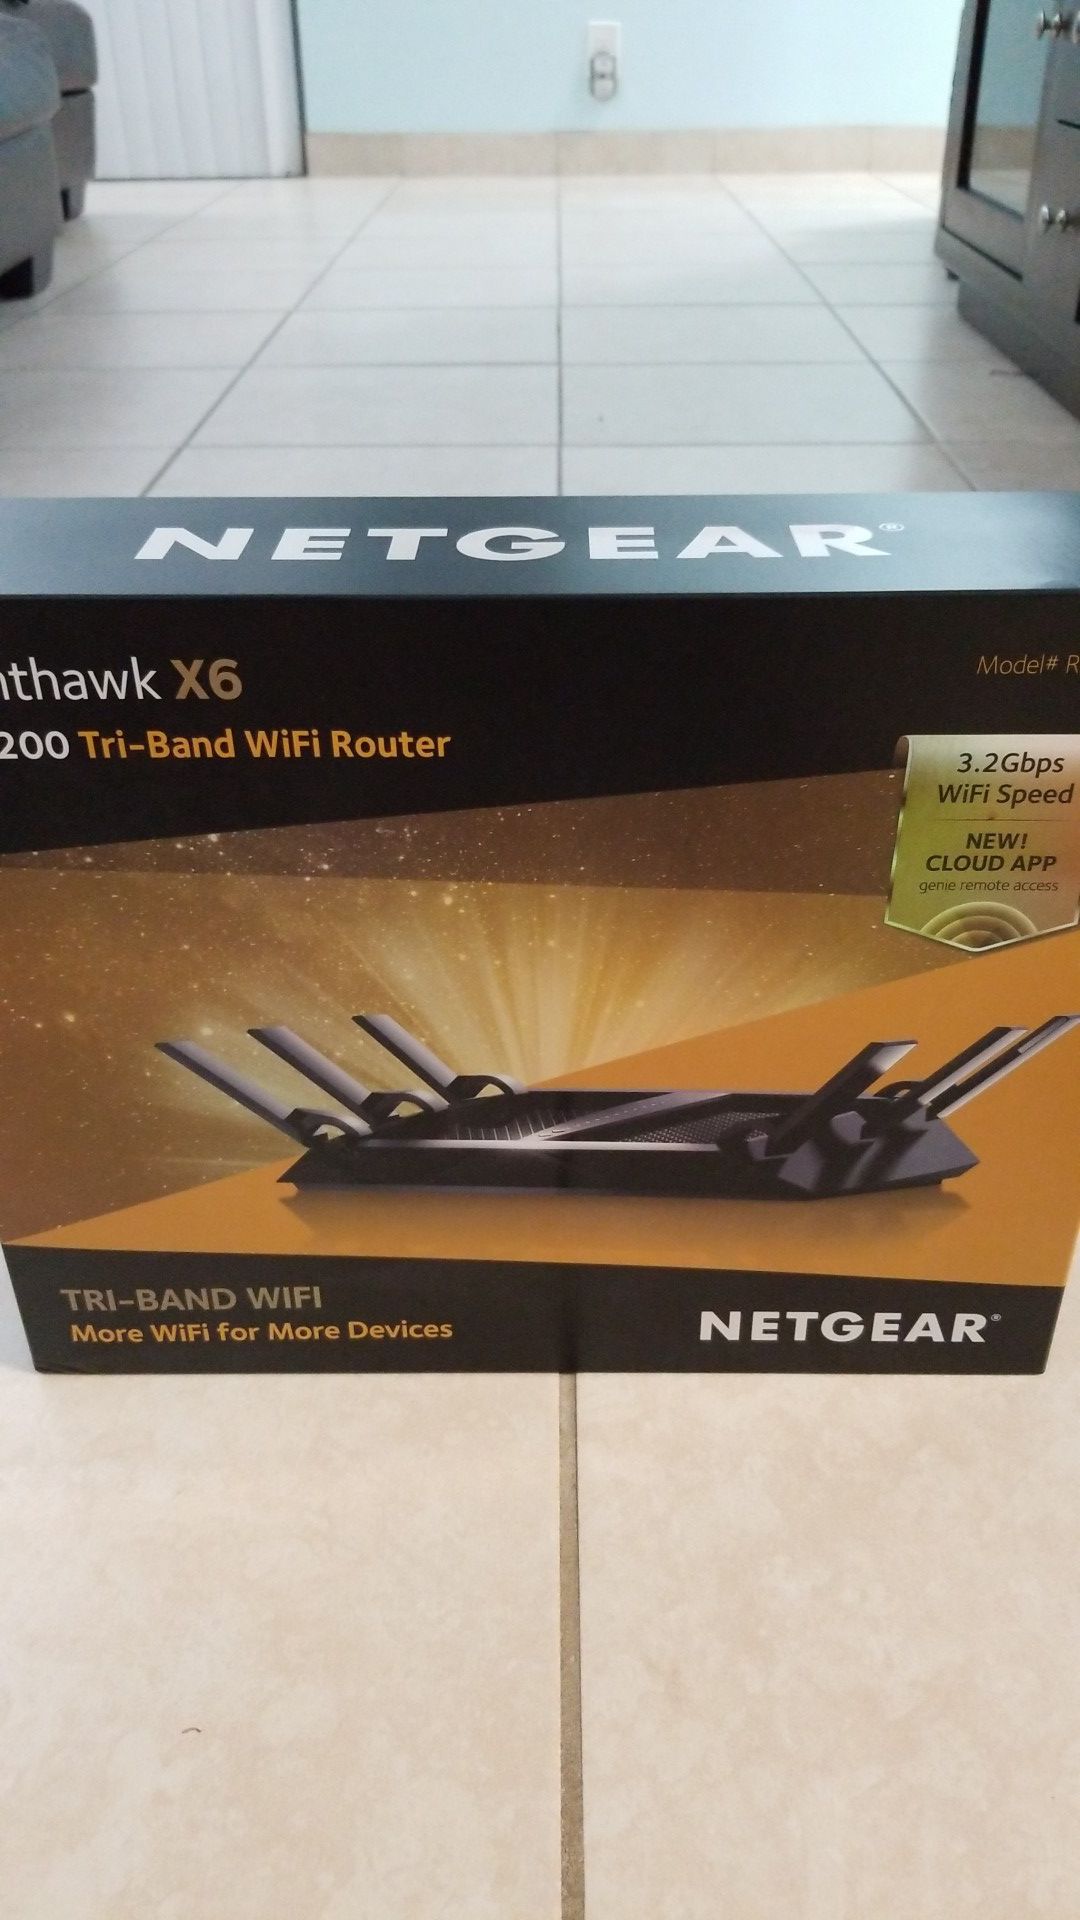 Netgear Nighthawk X6 AC3200 Tri-Band Wifi Router (Model# R8000)